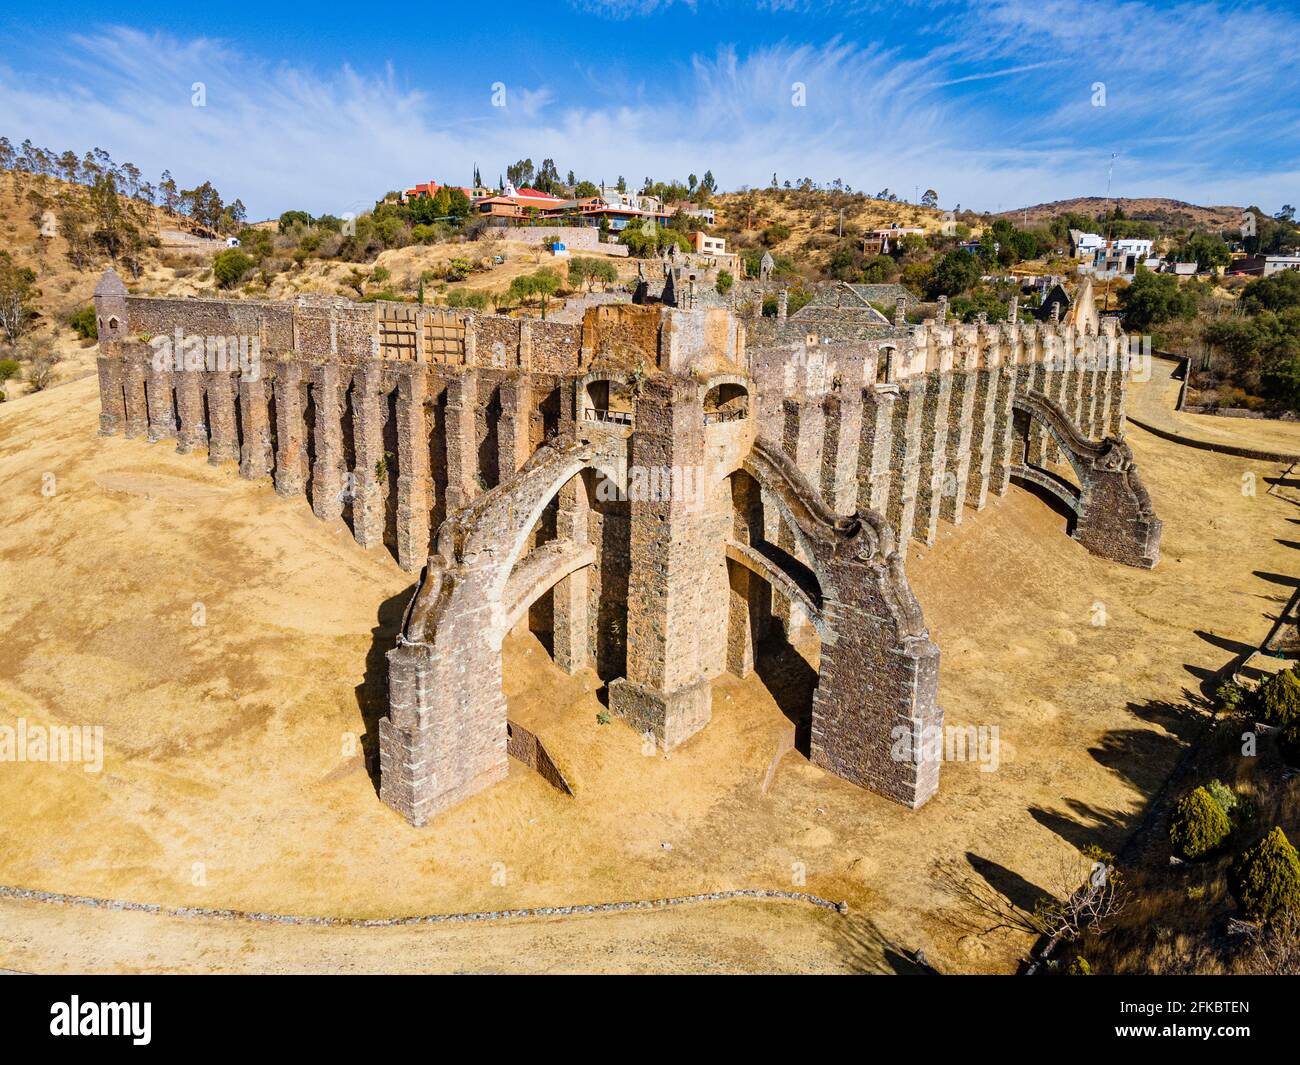 Ruines de l'Hacienda de Guadalupe, site du patrimoine mondial de l'UNESCO, Guanajuato, Mexique, Amérique du Nord Banque D'Images